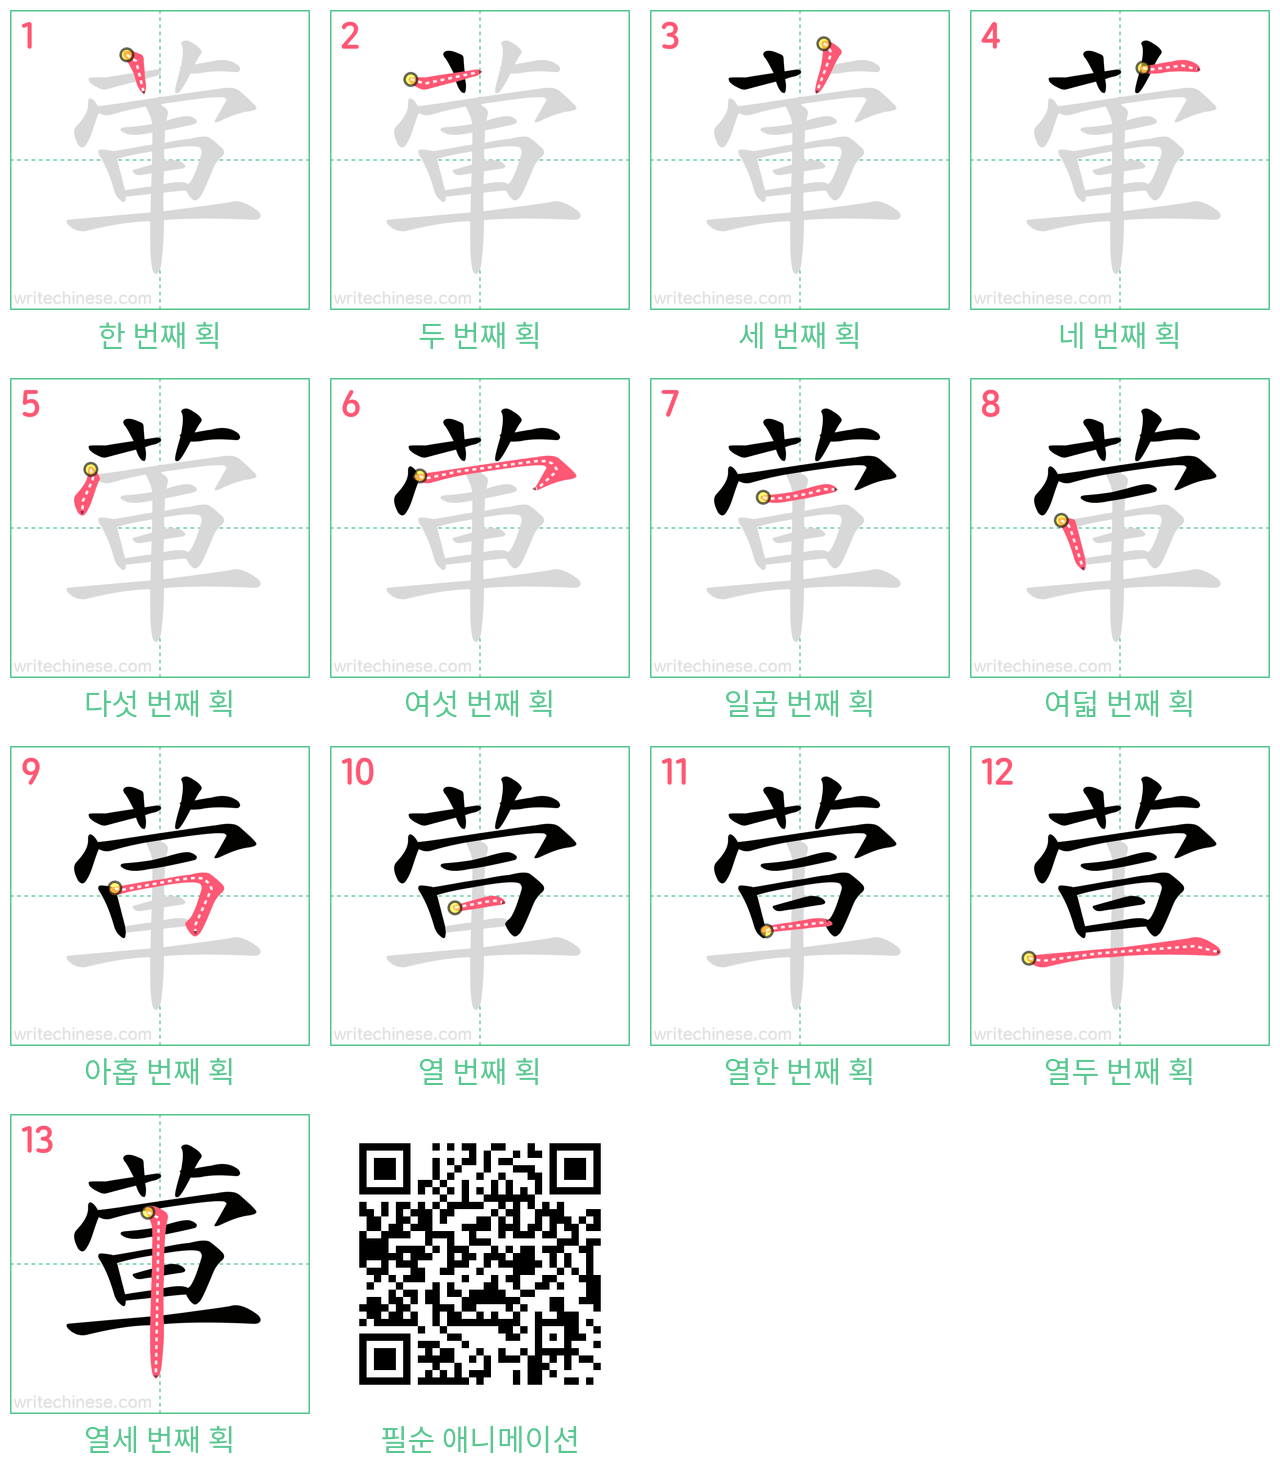 葷 step-by-step stroke order diagrams